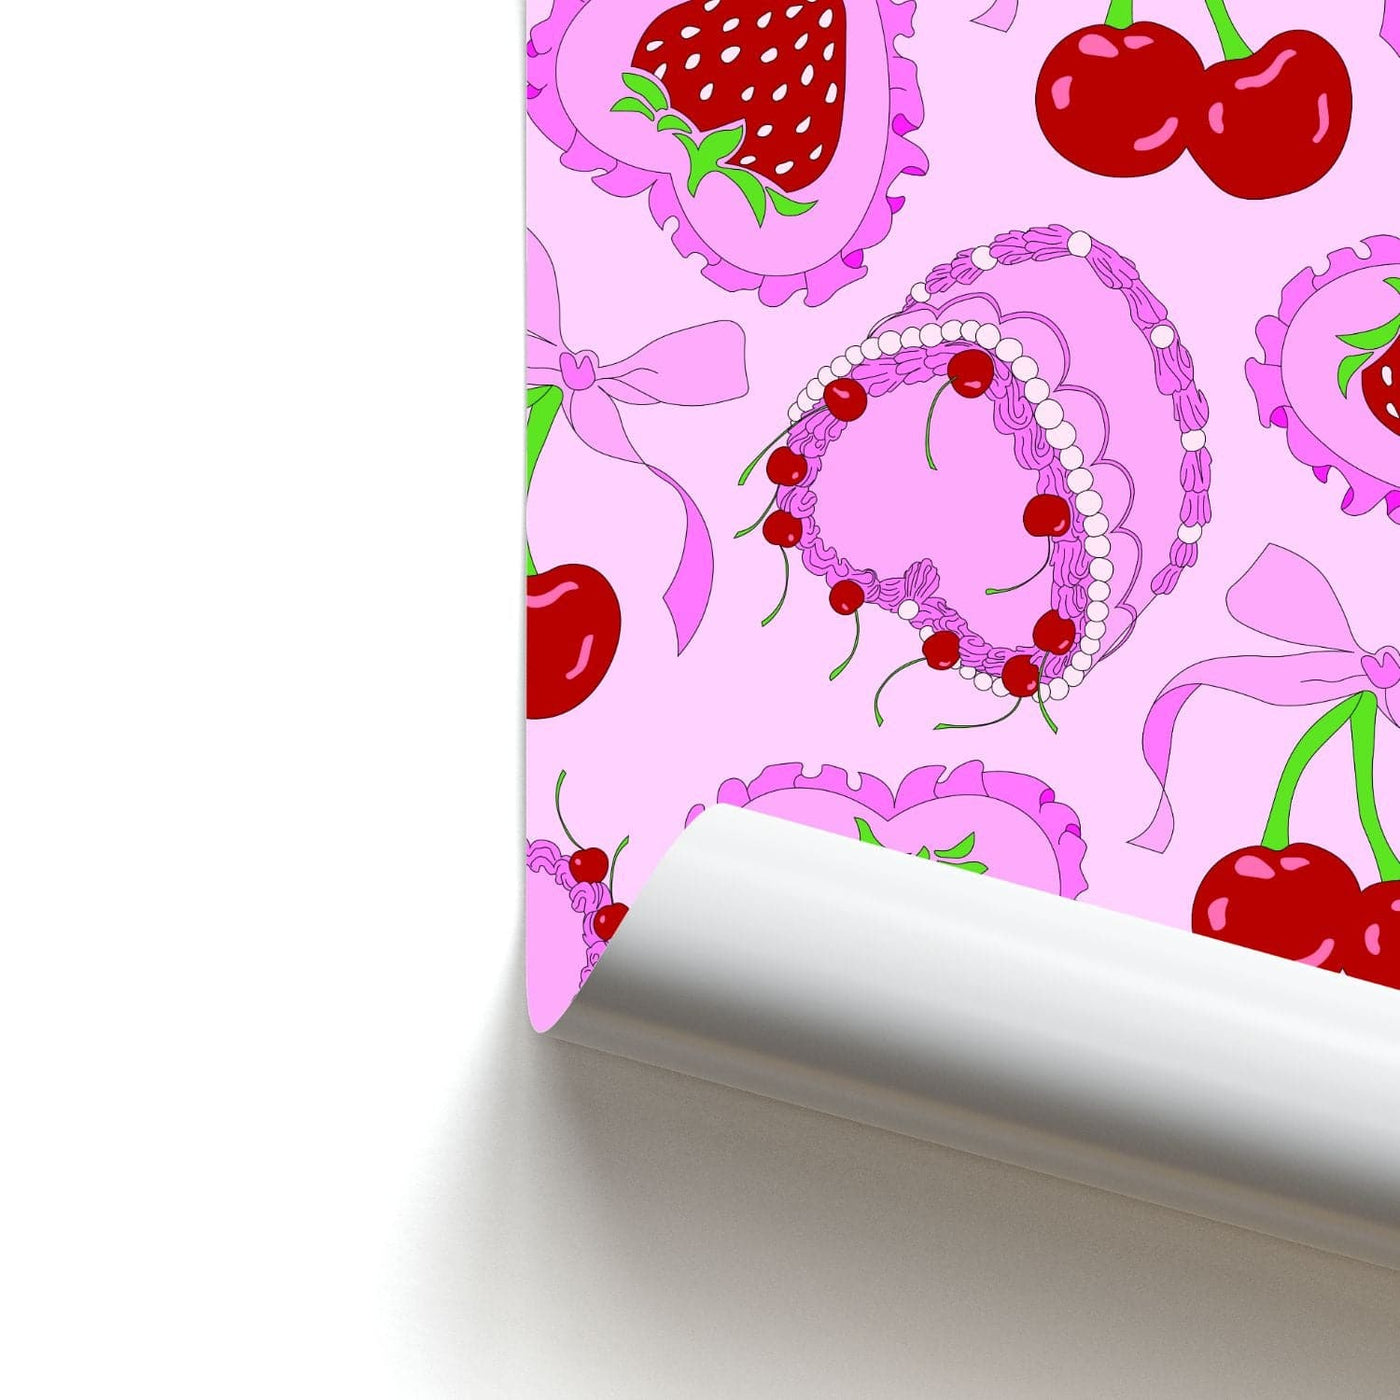 Cherries, Strawberries And Cake - Valentine's Day Poster